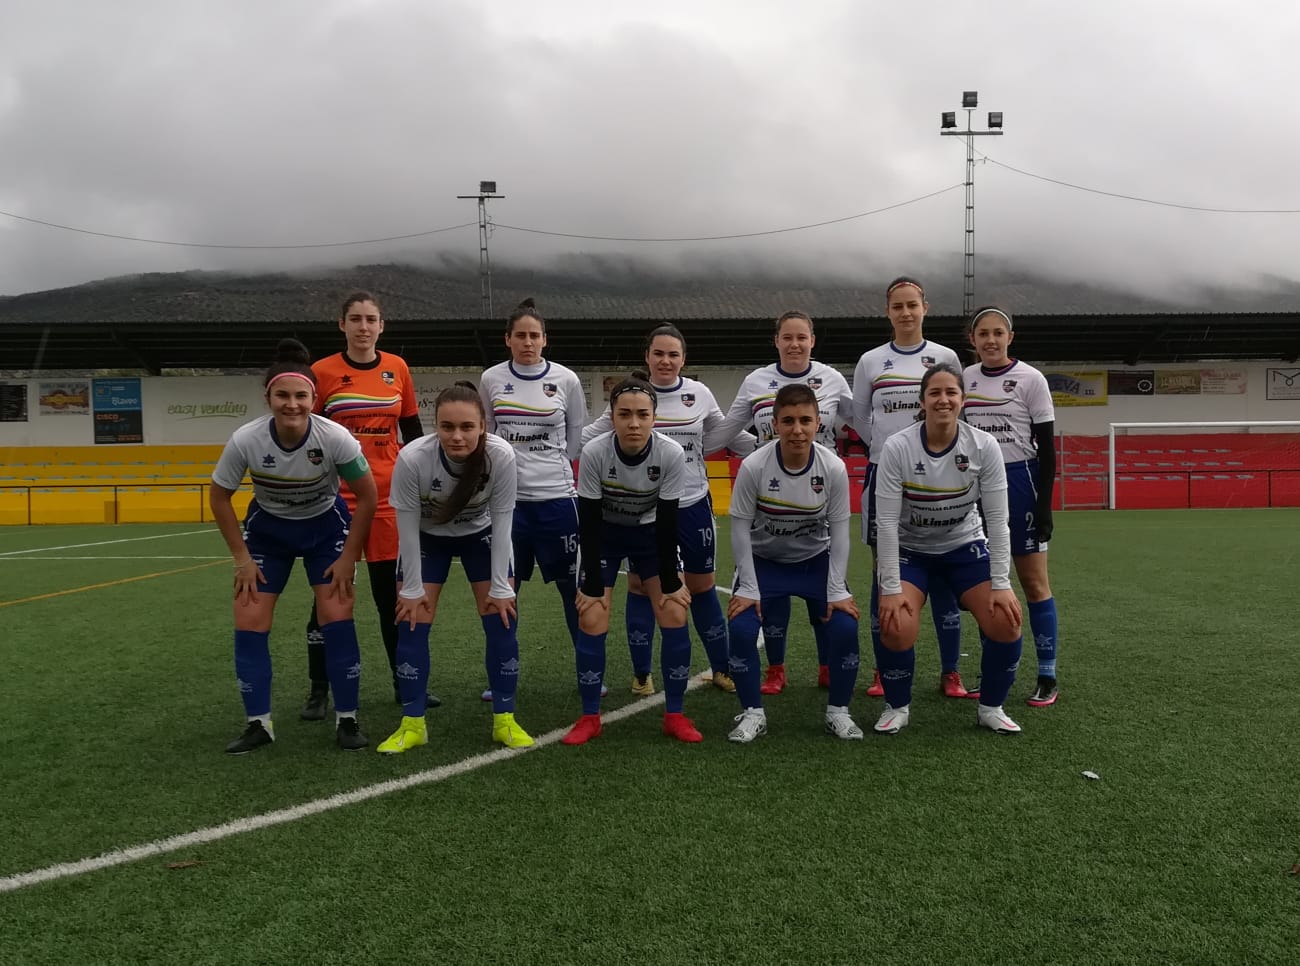 Se recupera la jornada 2 de 2ª Andaluza de Fútbol femenino